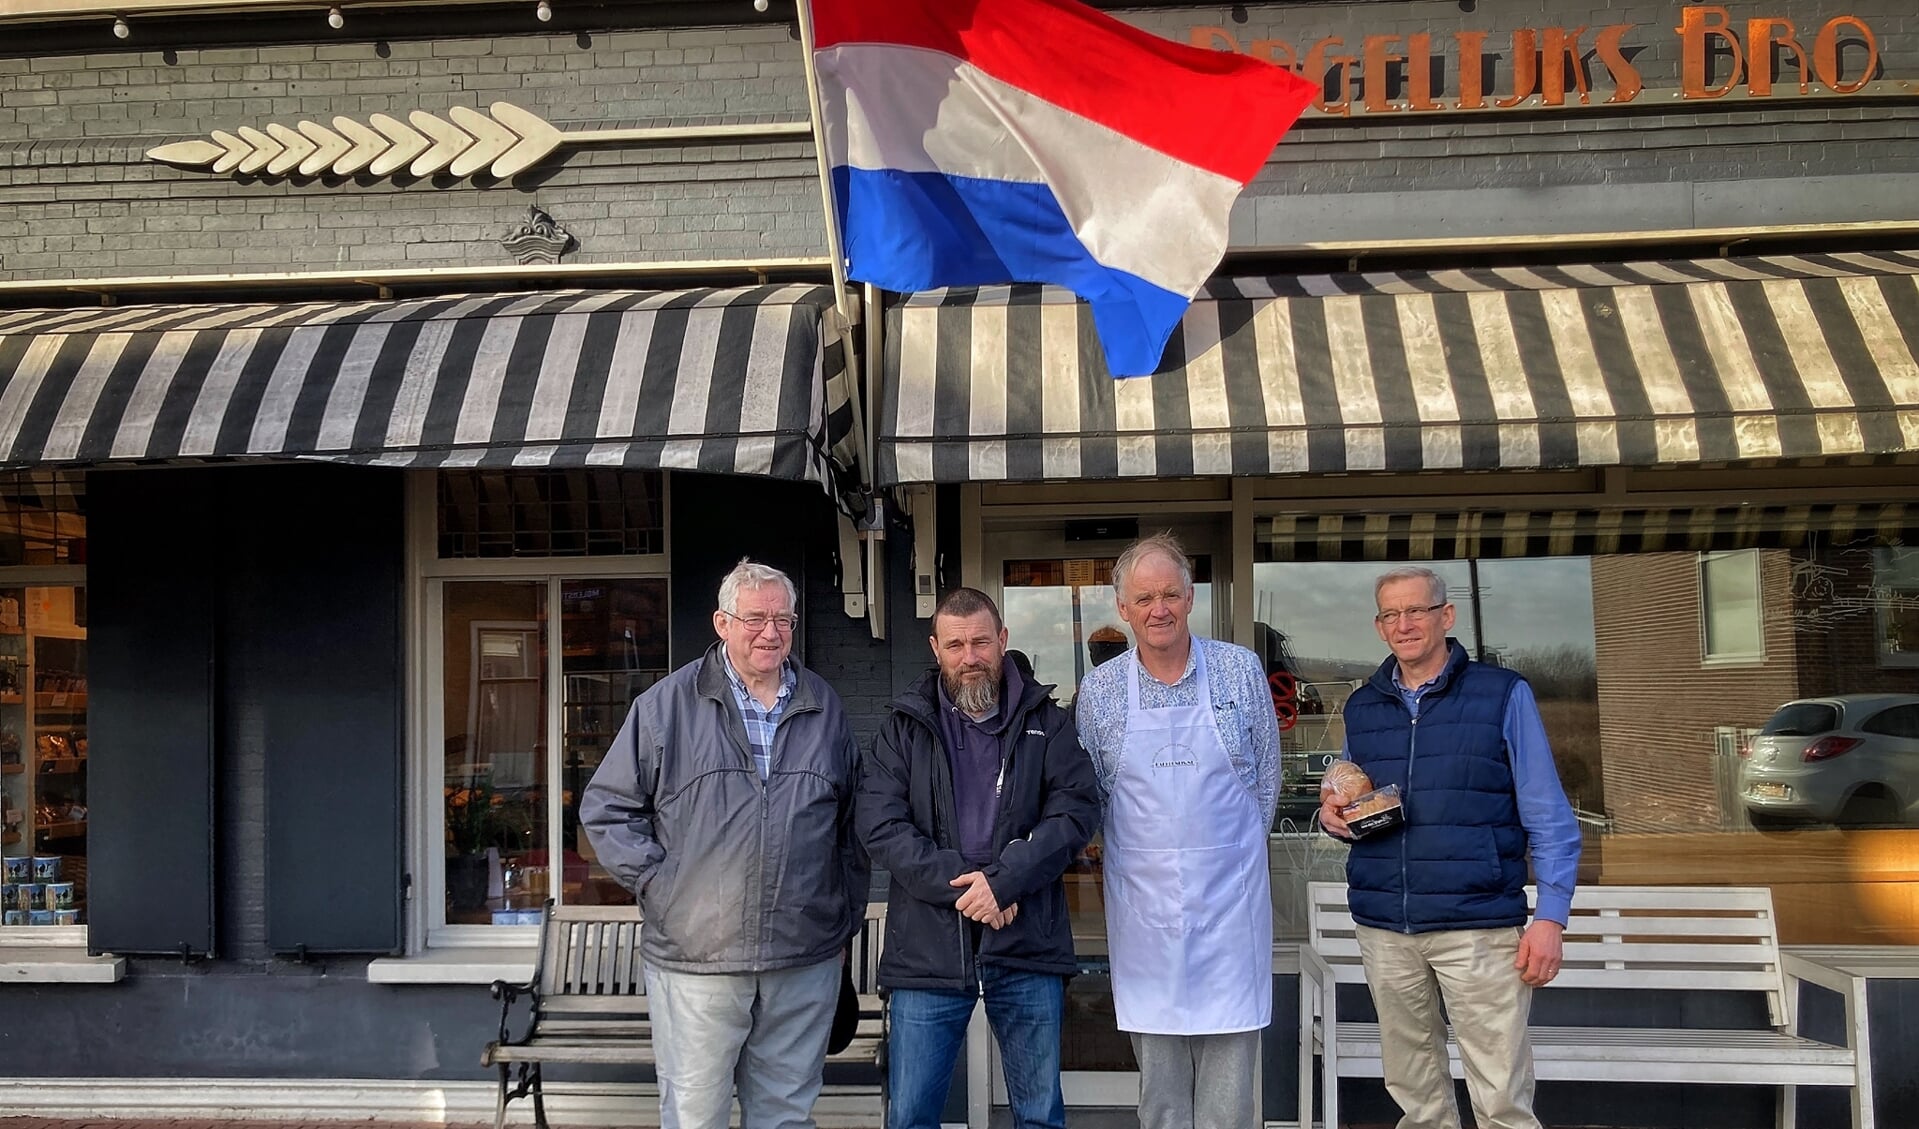 • Vlnr: Nijs (Nick the Dutch baker), Peter Paul Klapwijk (Stichting Ons Dagelijks Brood), neef Nijs en Piet.